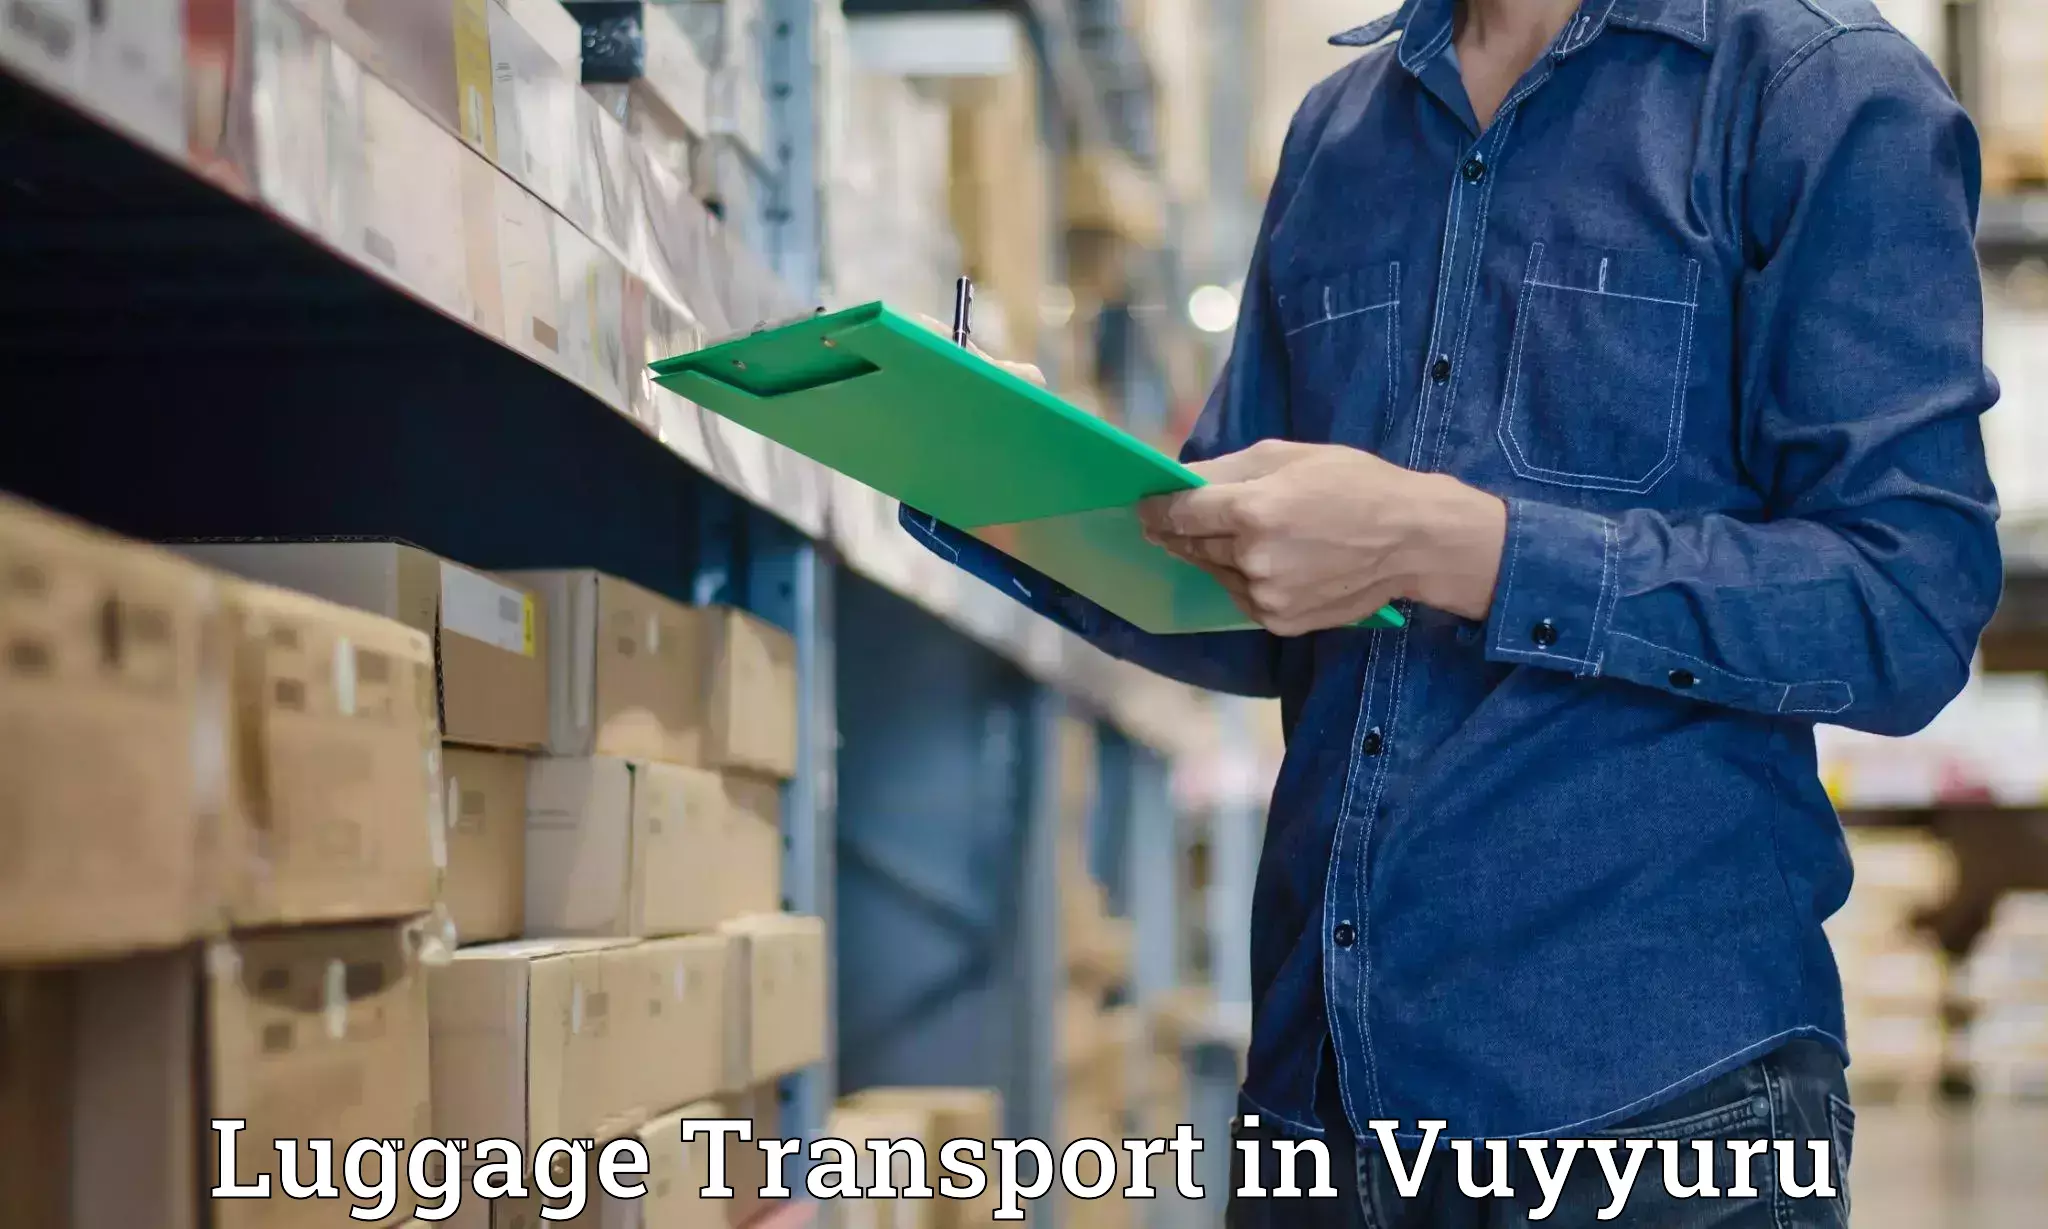 Luggage transport solutions in Vuyyuru